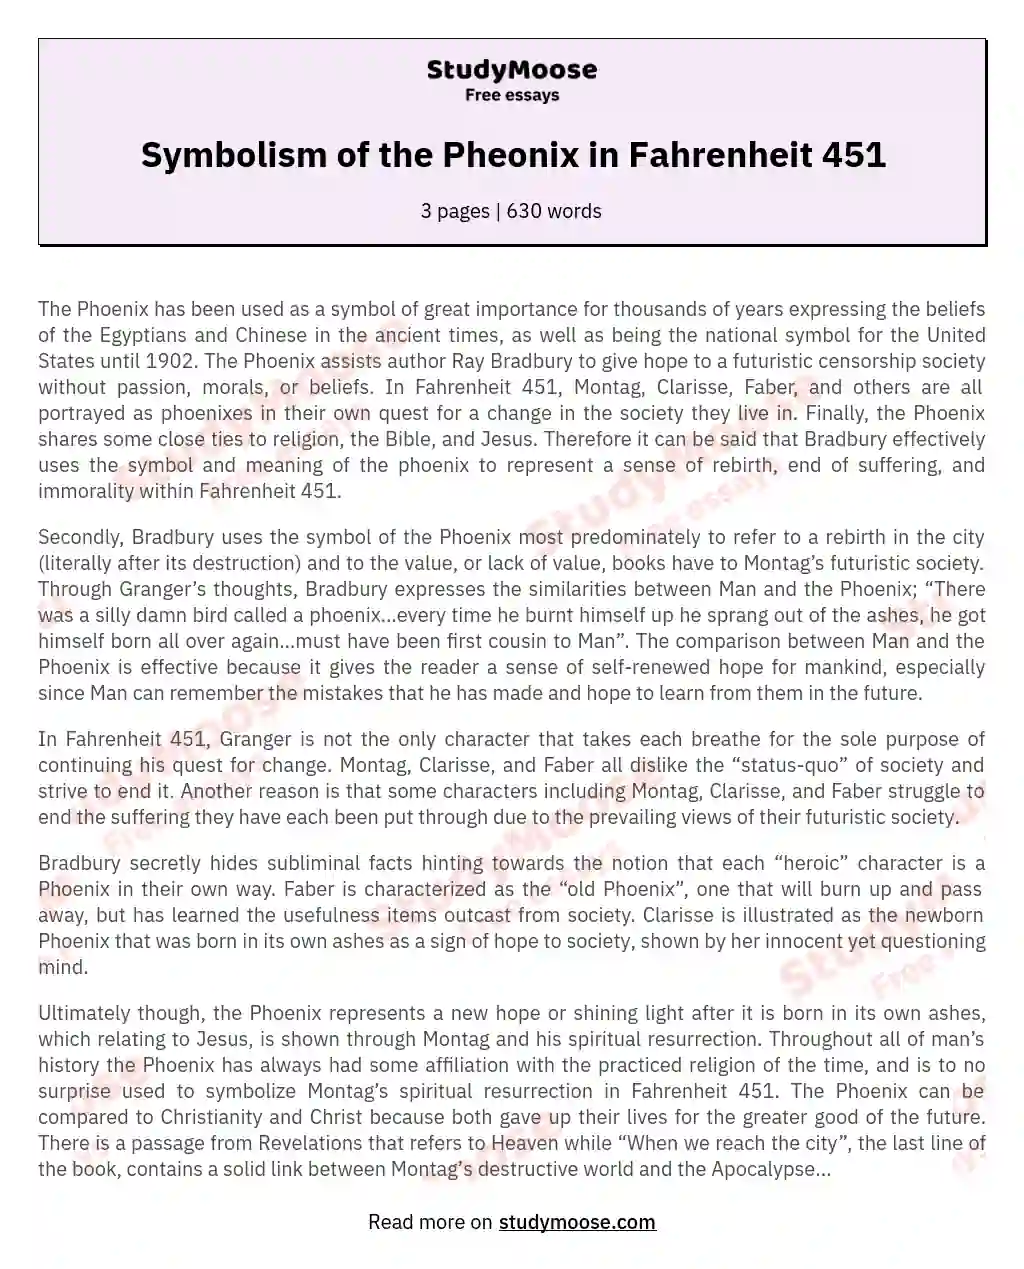 Symbolism of the Pheonix in Fahrenheit 451 essay